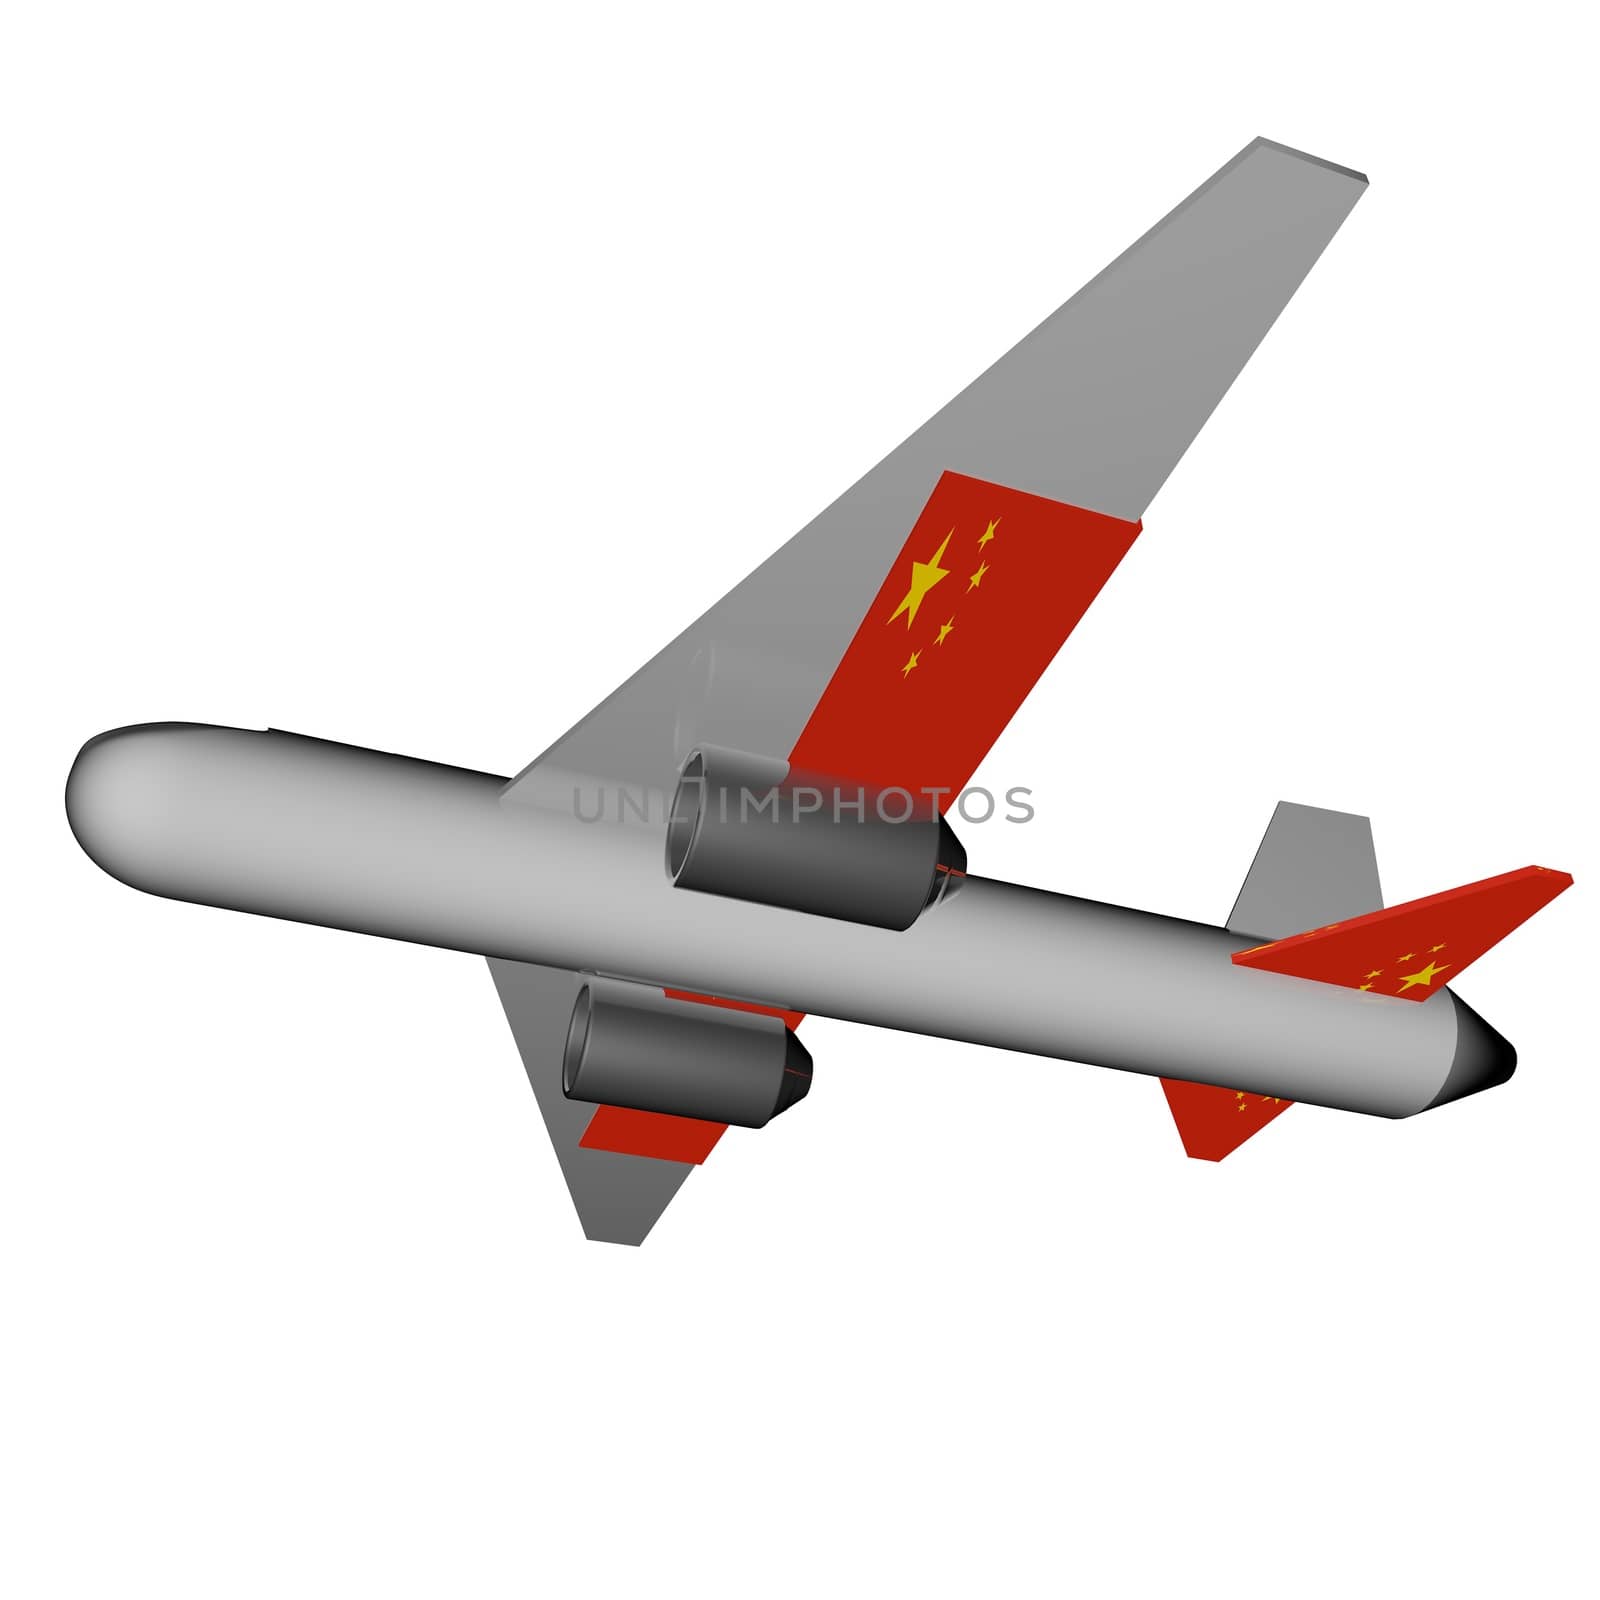 China Plane by Koufax73